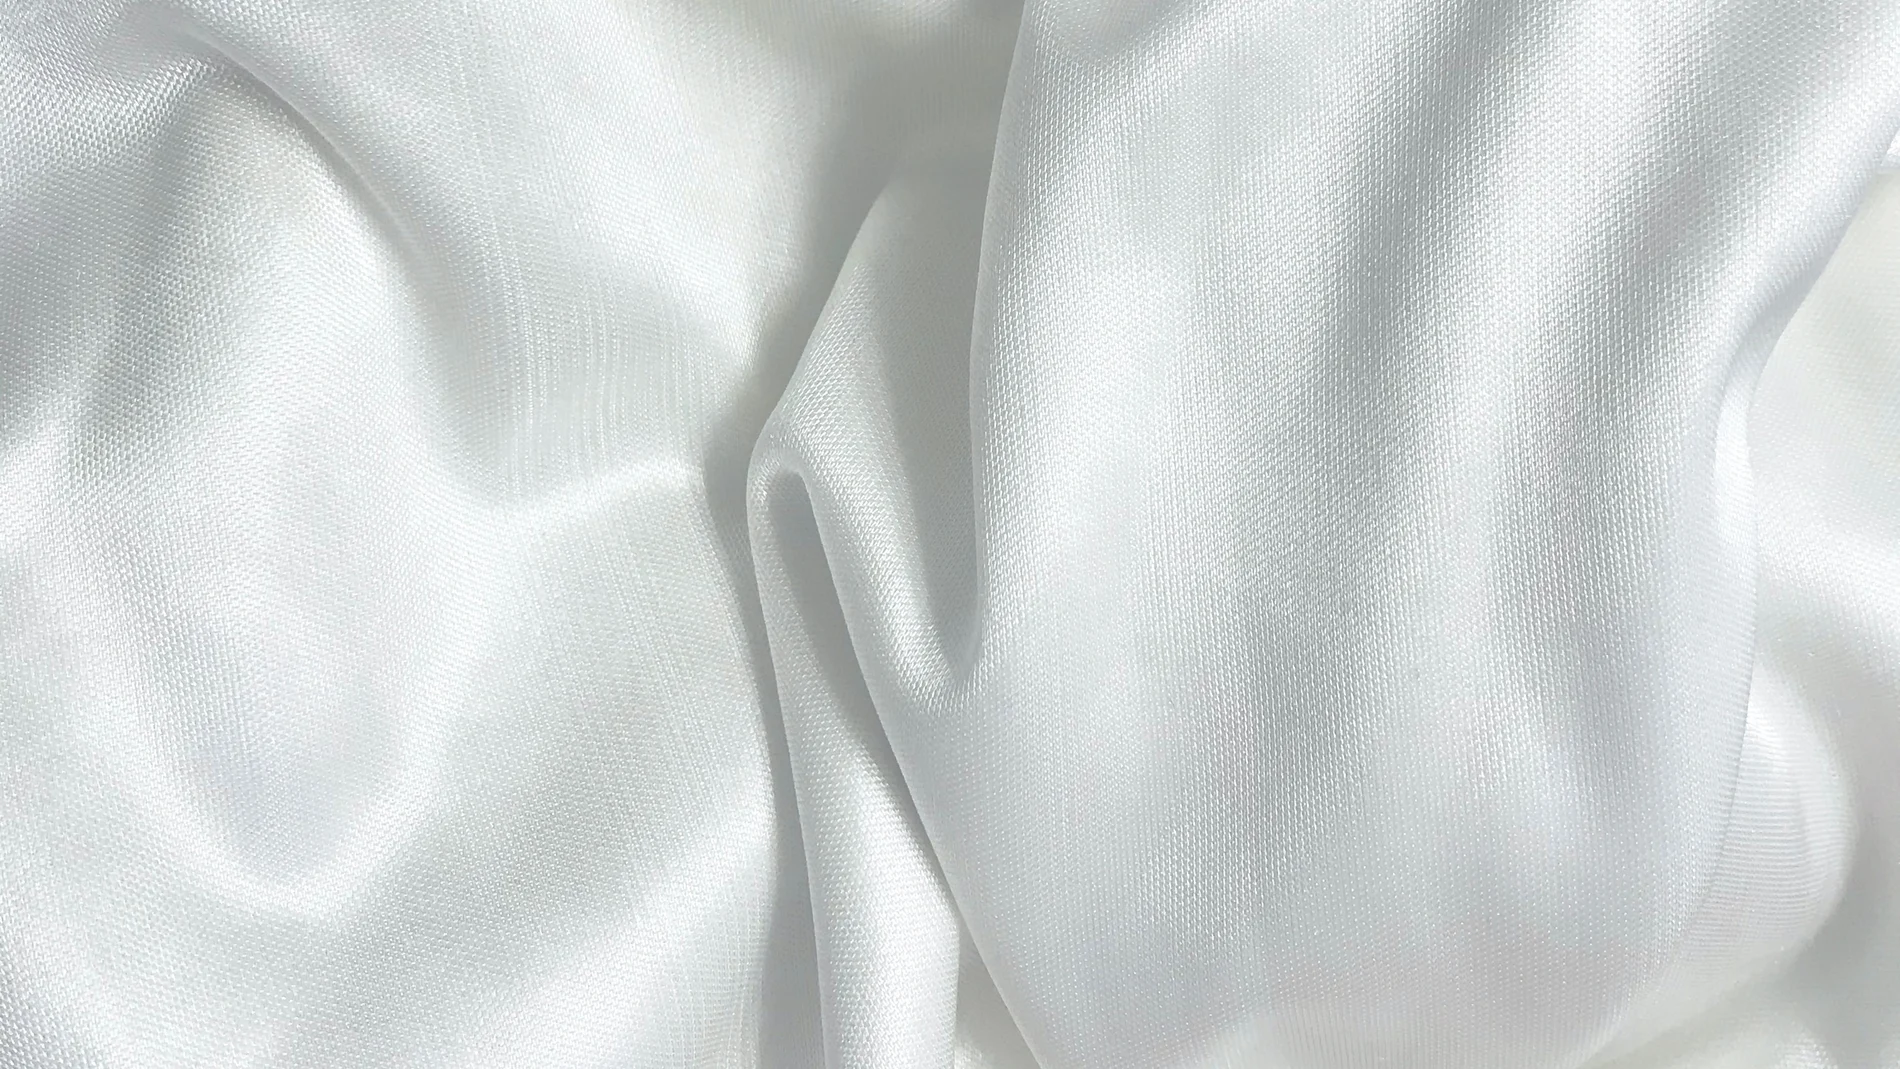 Cómo lavar la ropa blanca muy sucia? Trucos para que quede impecable